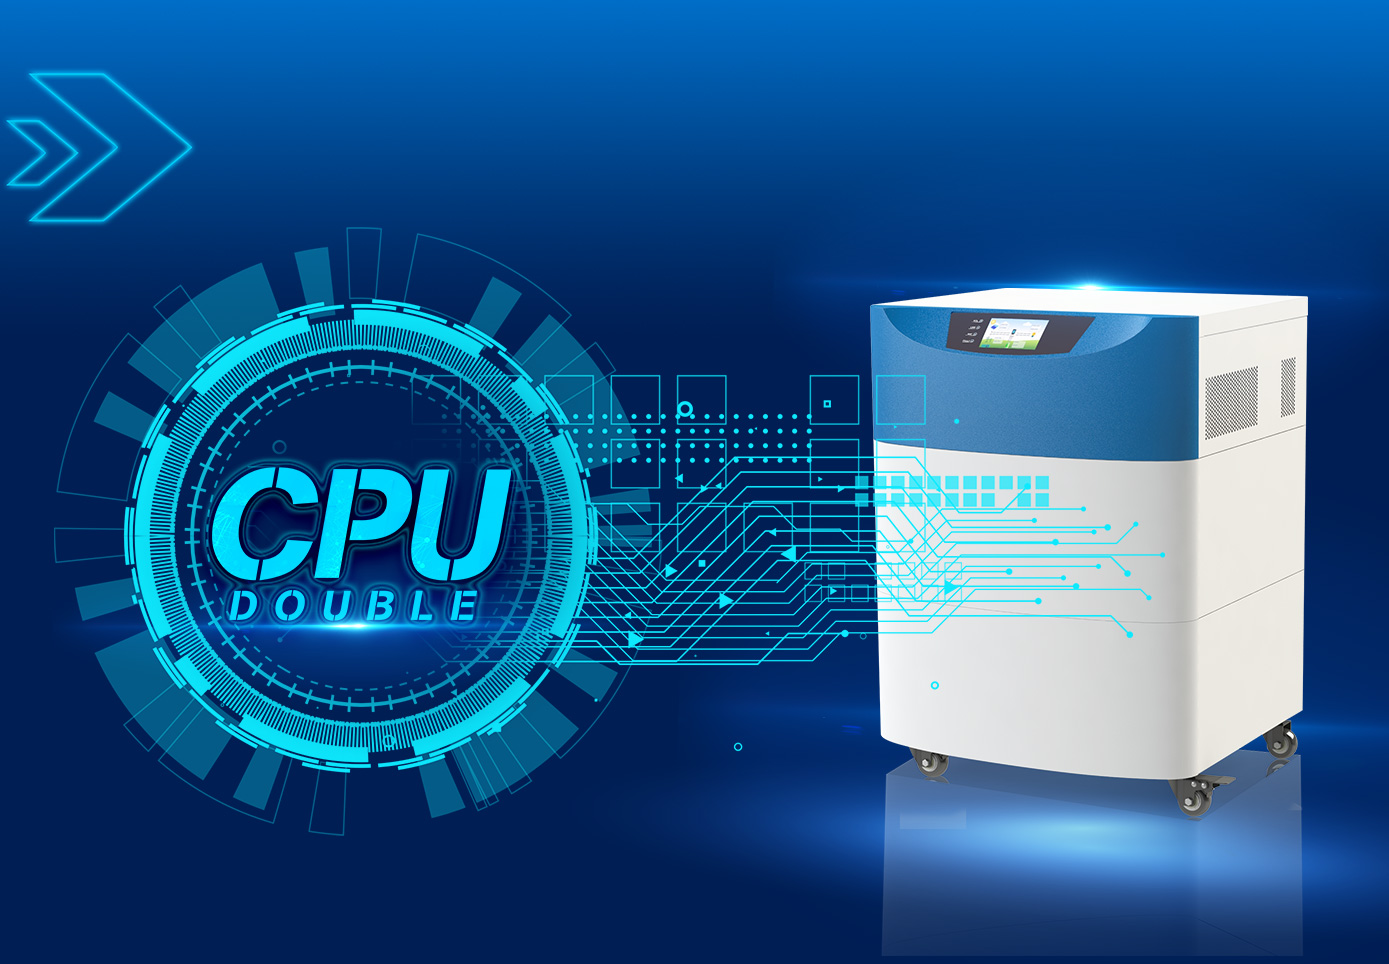 CPU dupla tecnologia de controle inteligente, excelência de desempenho.